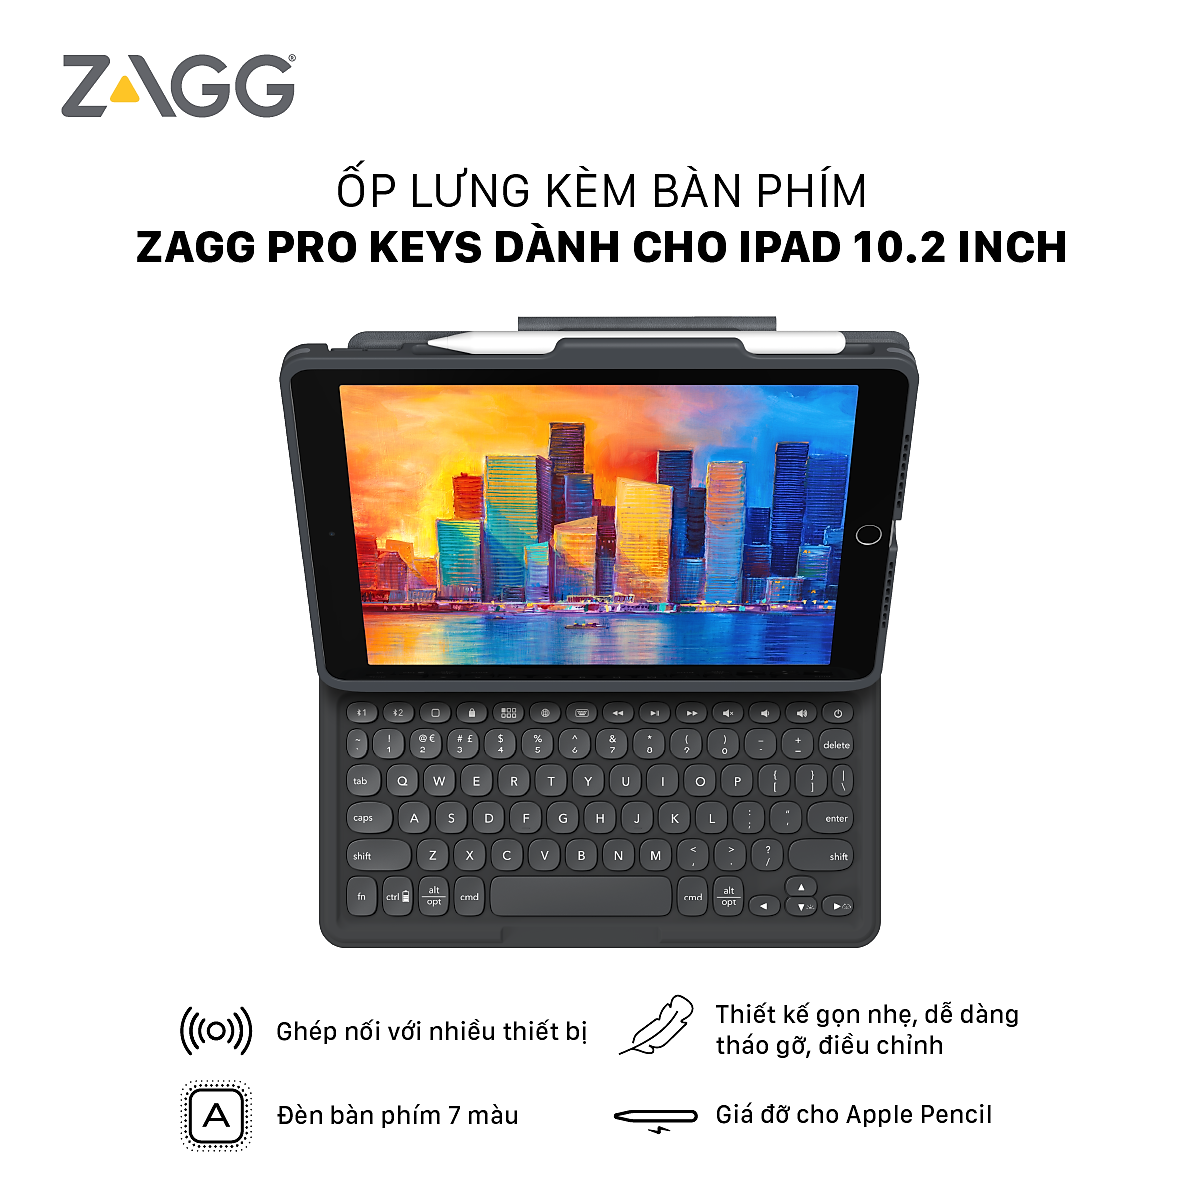 Ốp lưng  kèm bàn phím  dành cho ZAGG Keyboard Pro Keys iPad 10.2 inch - Black/Gray-UK - 103407134 - Hàng chính hãng